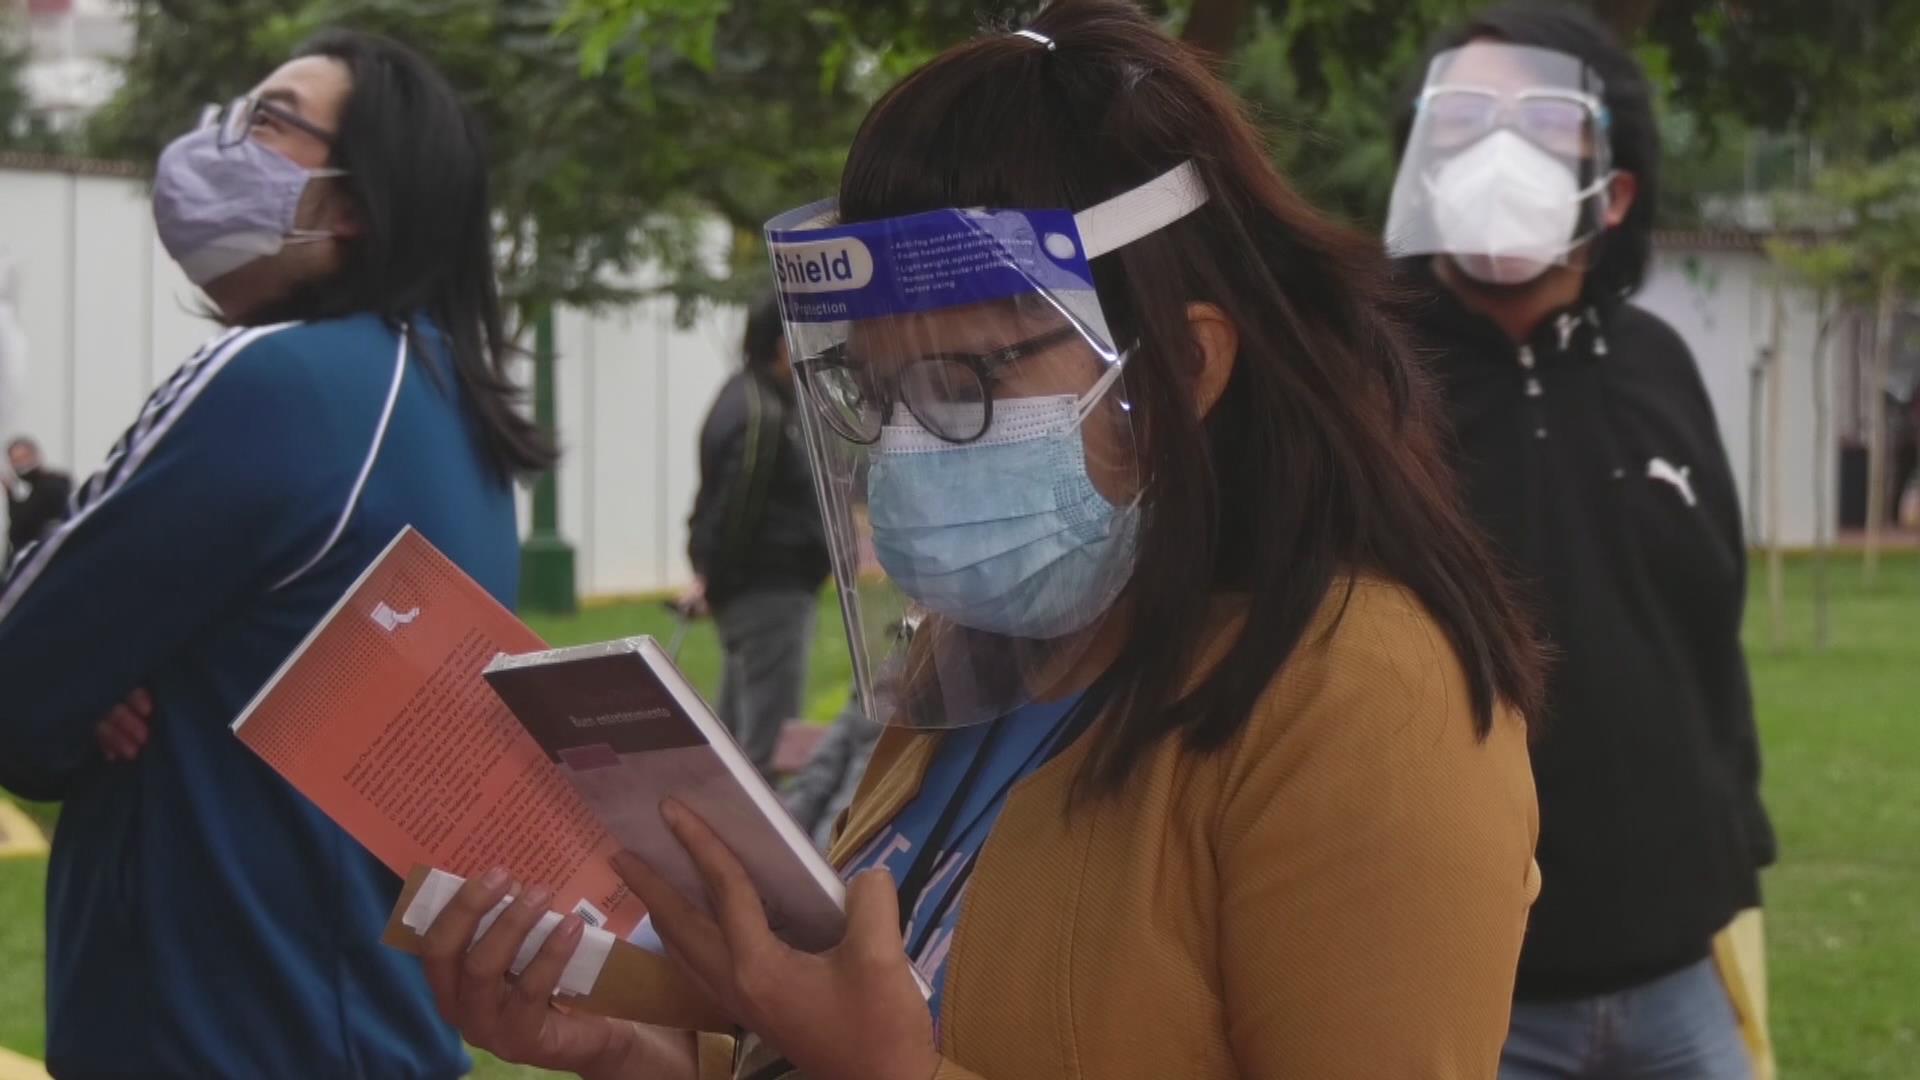 Perú celebra primera feria del libro de forma presencial tras pandemia